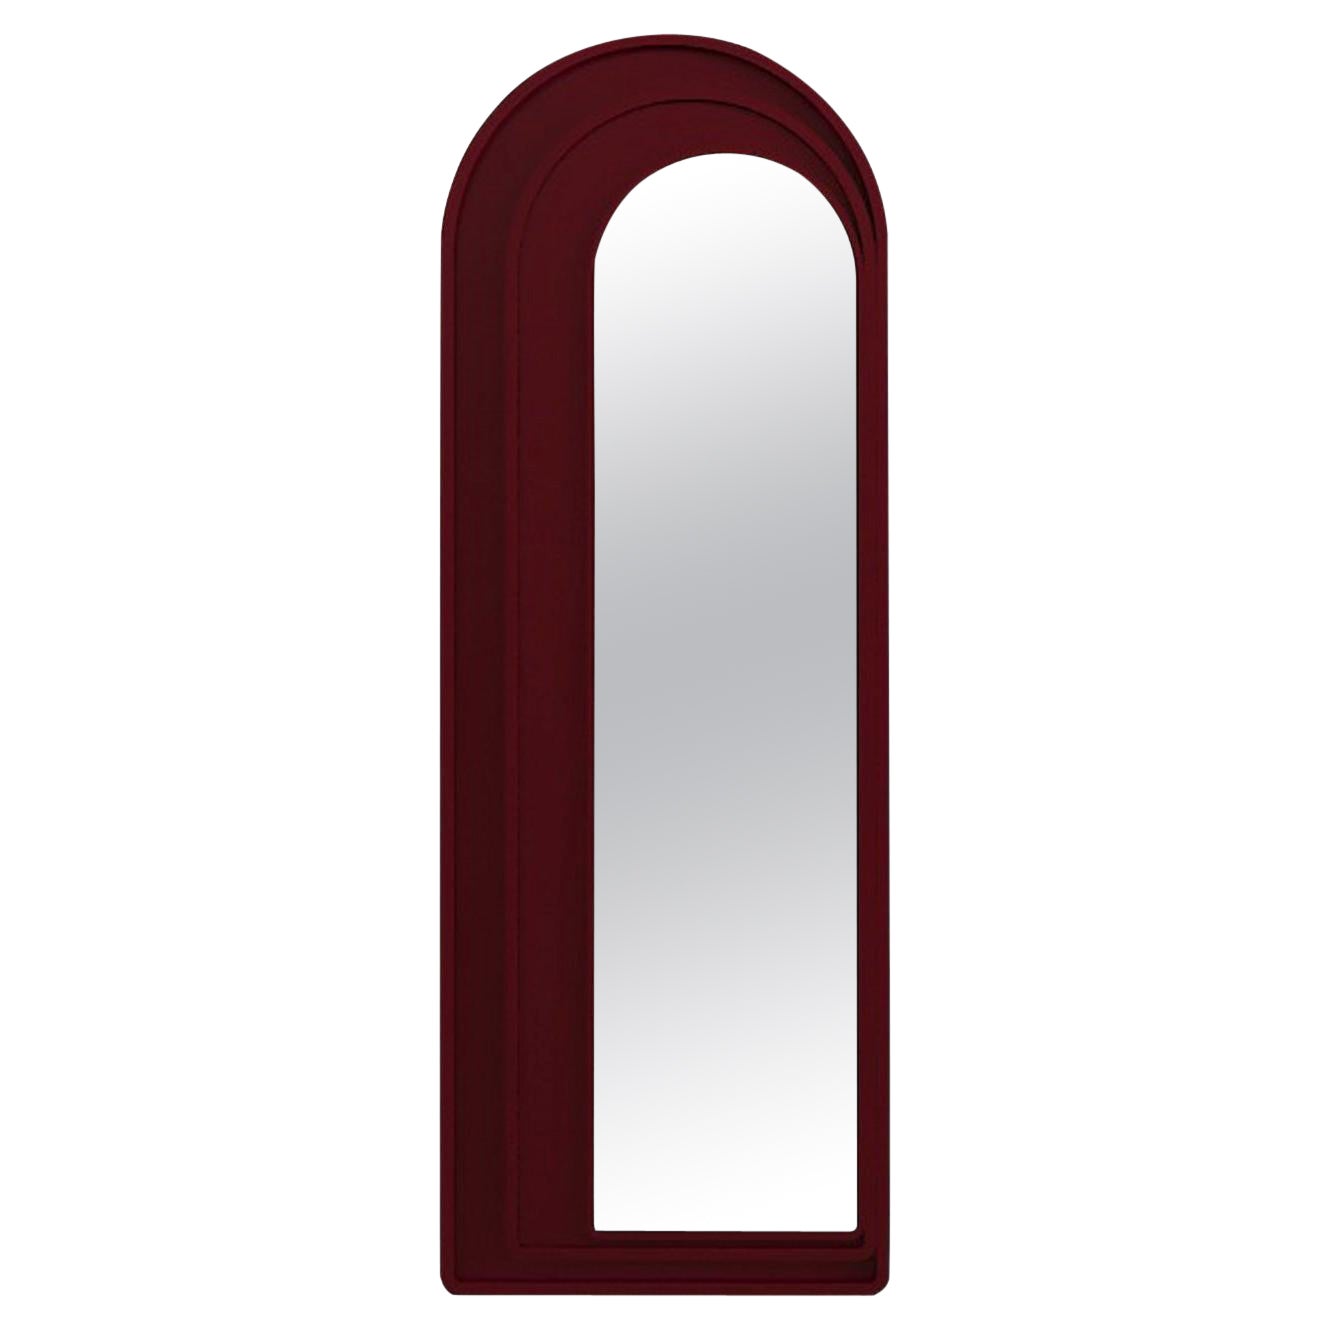 Weinroter modernistischer Spiegel im andalusischen Stil, lackiert